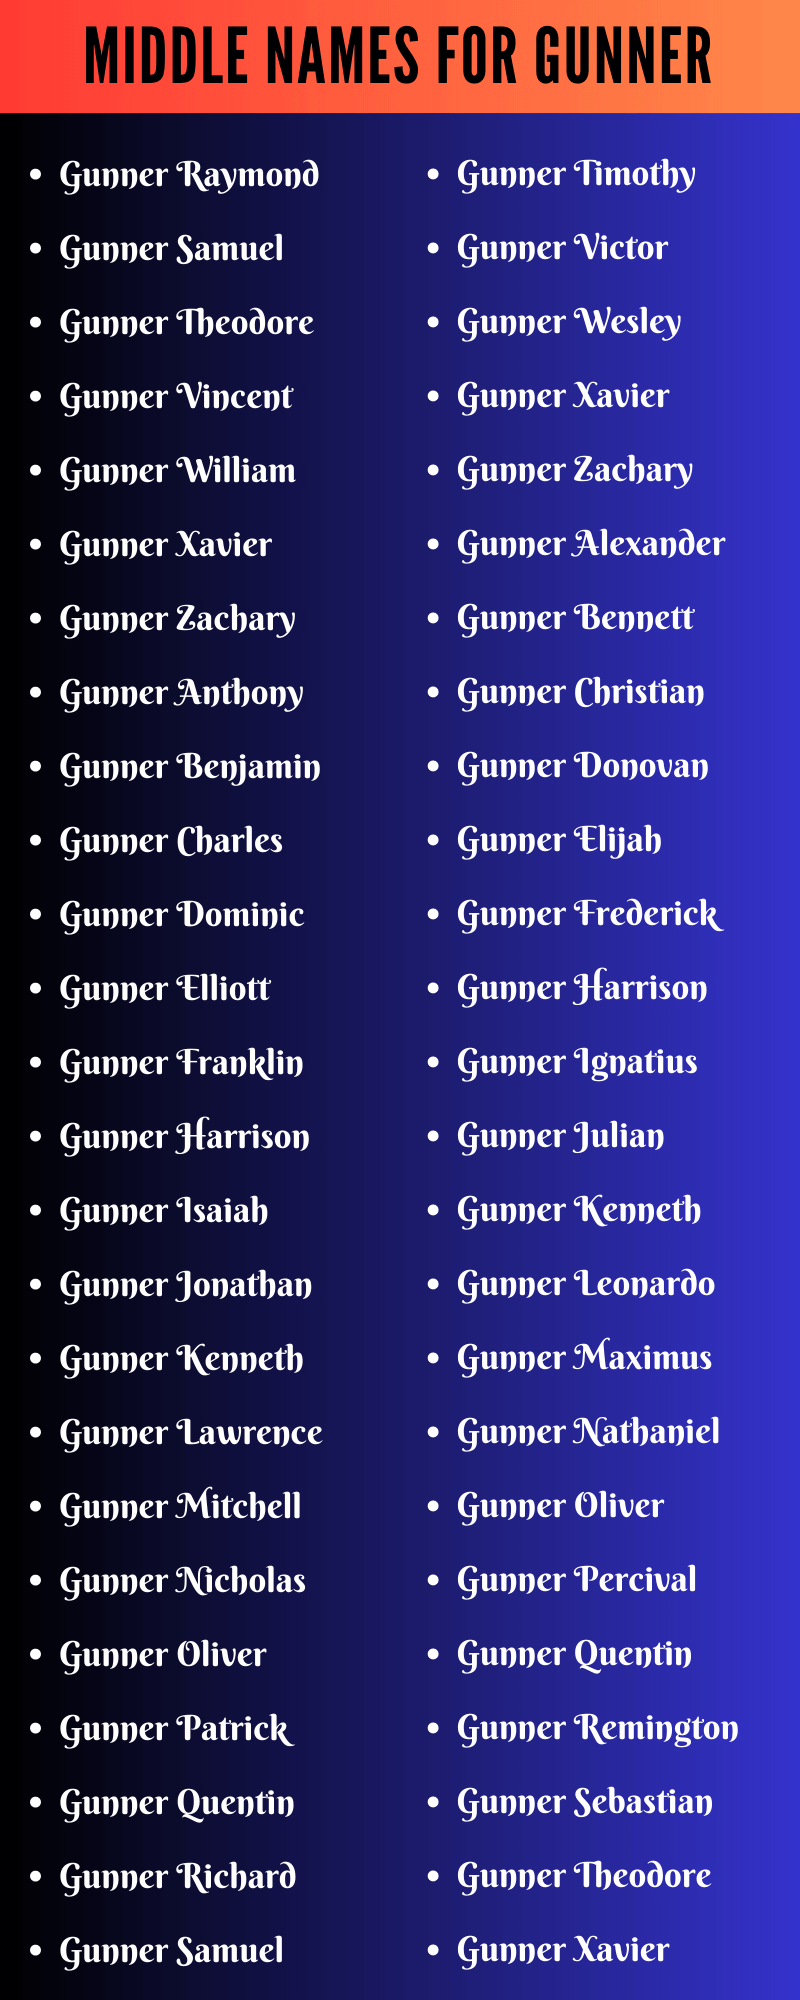 Middle Names For Gunner